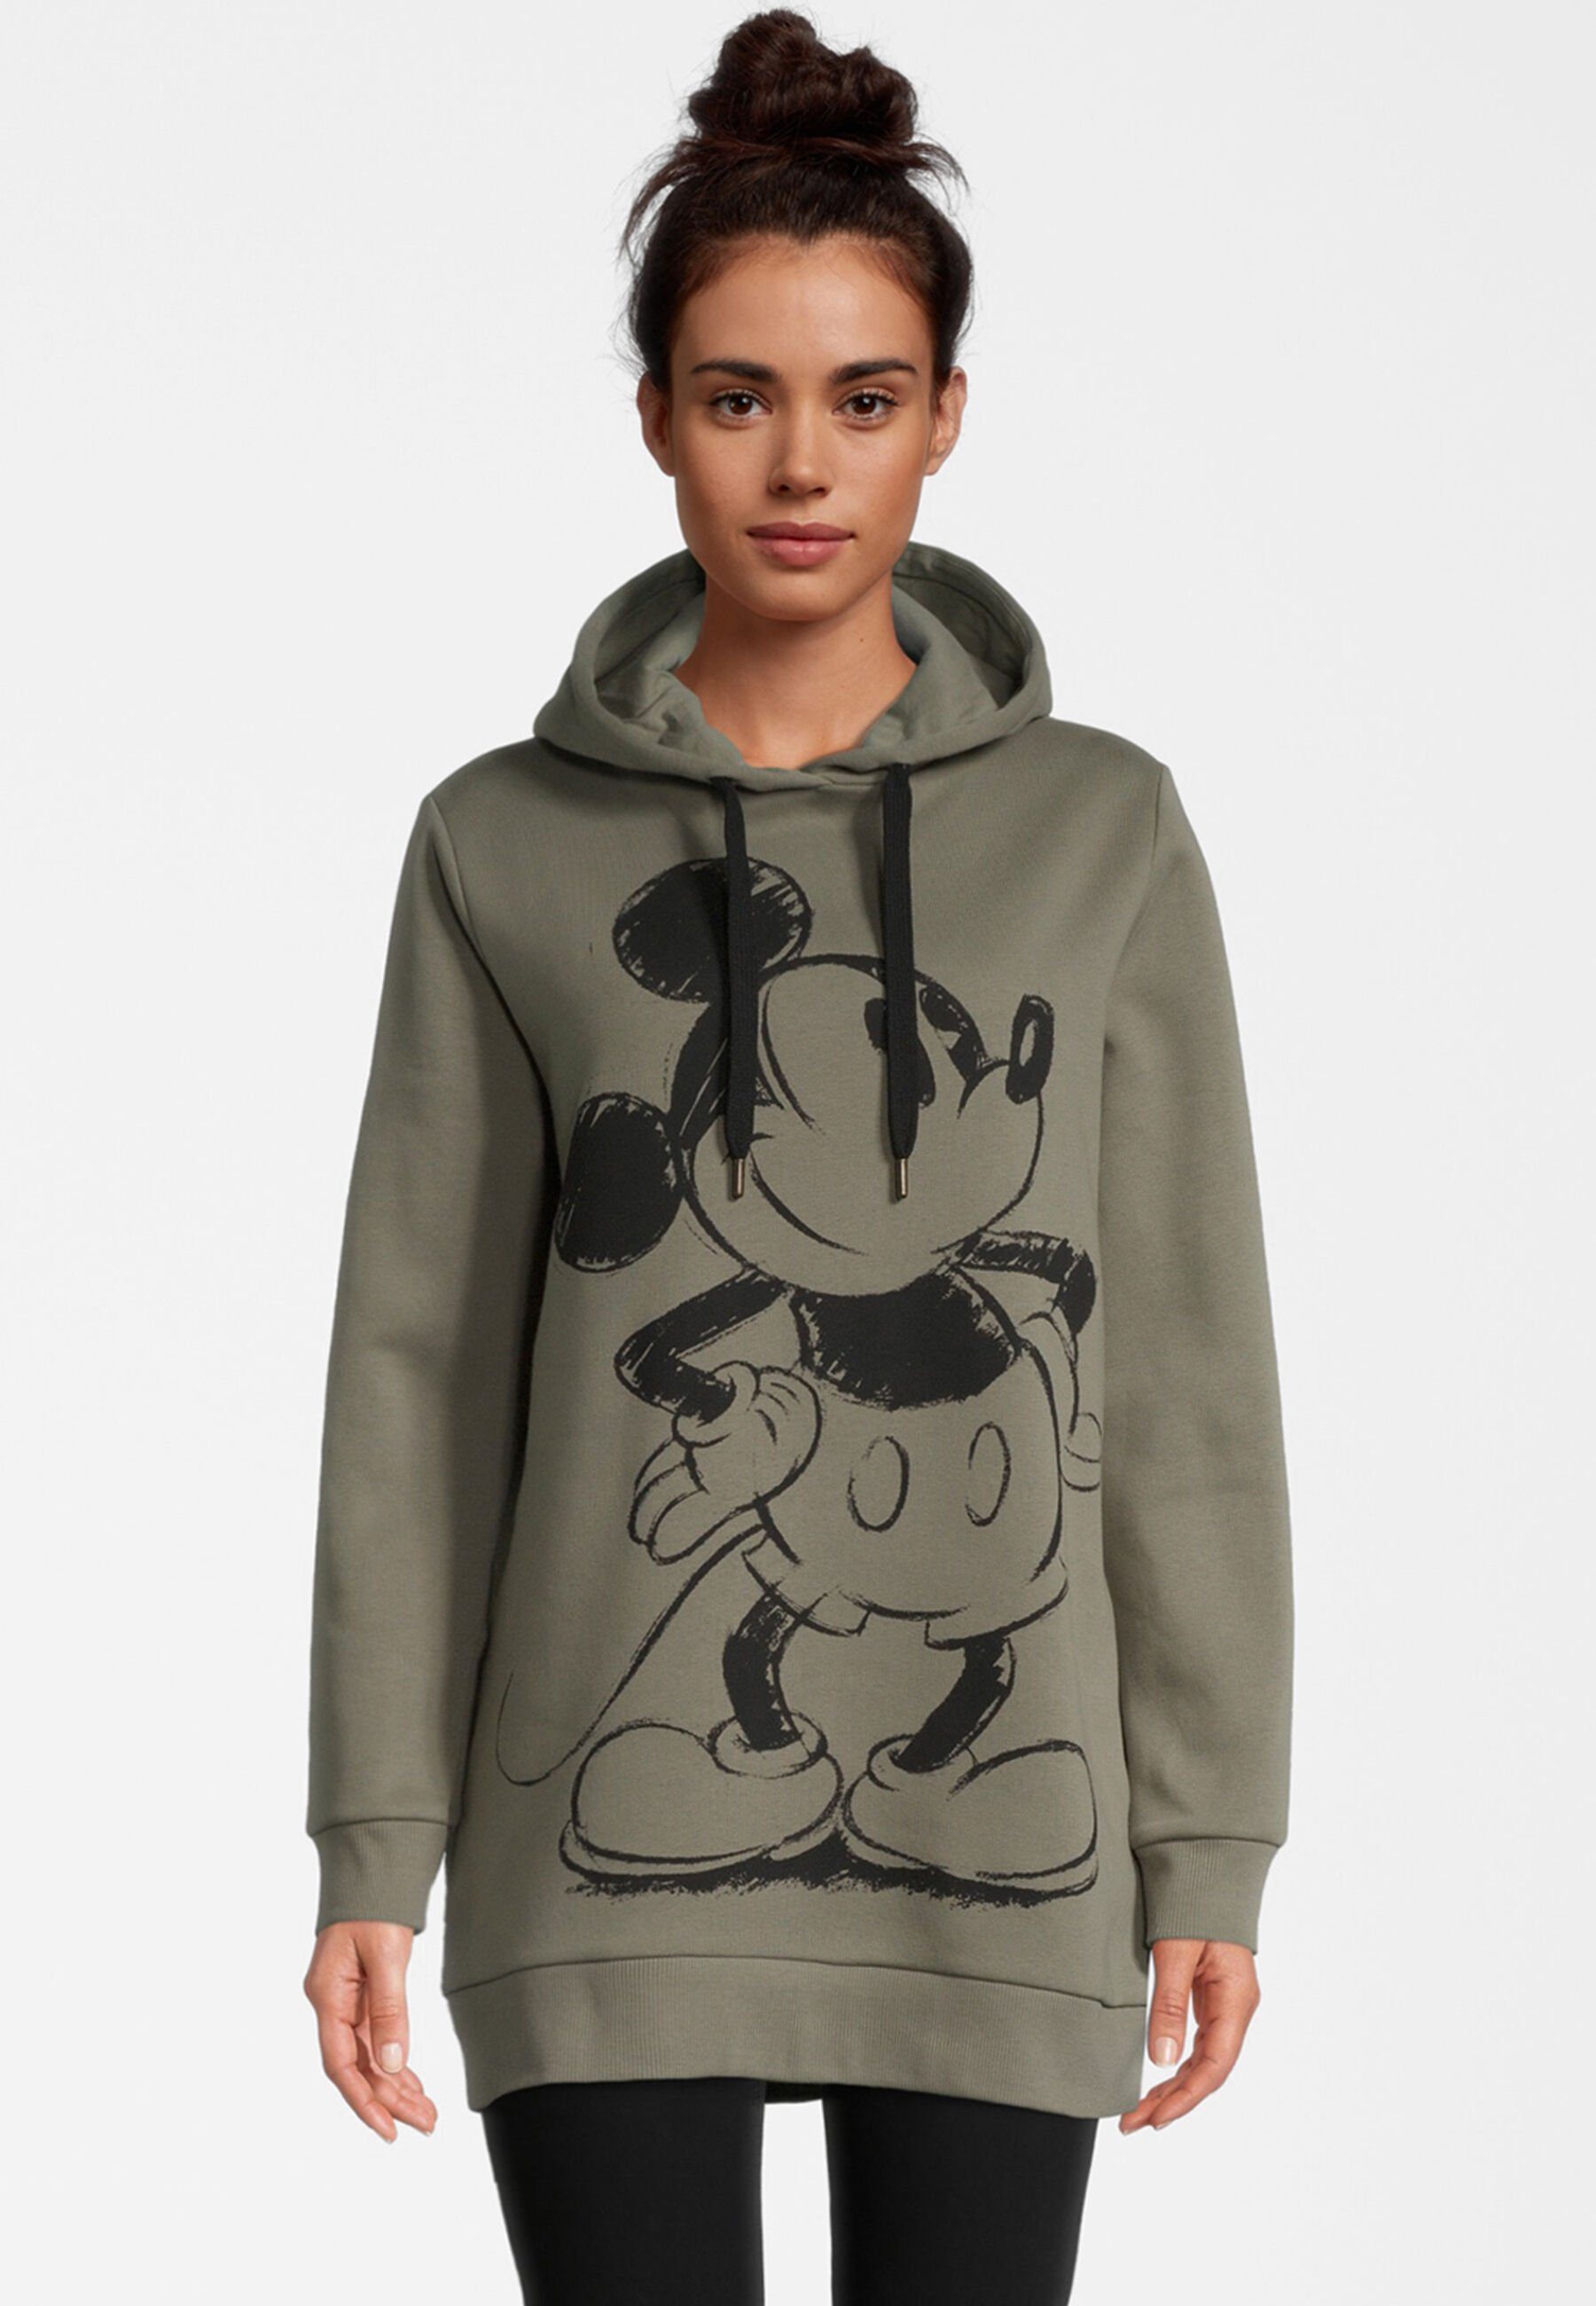 Mickey Mouse Kapuzenpullover Retro COURSE khaki